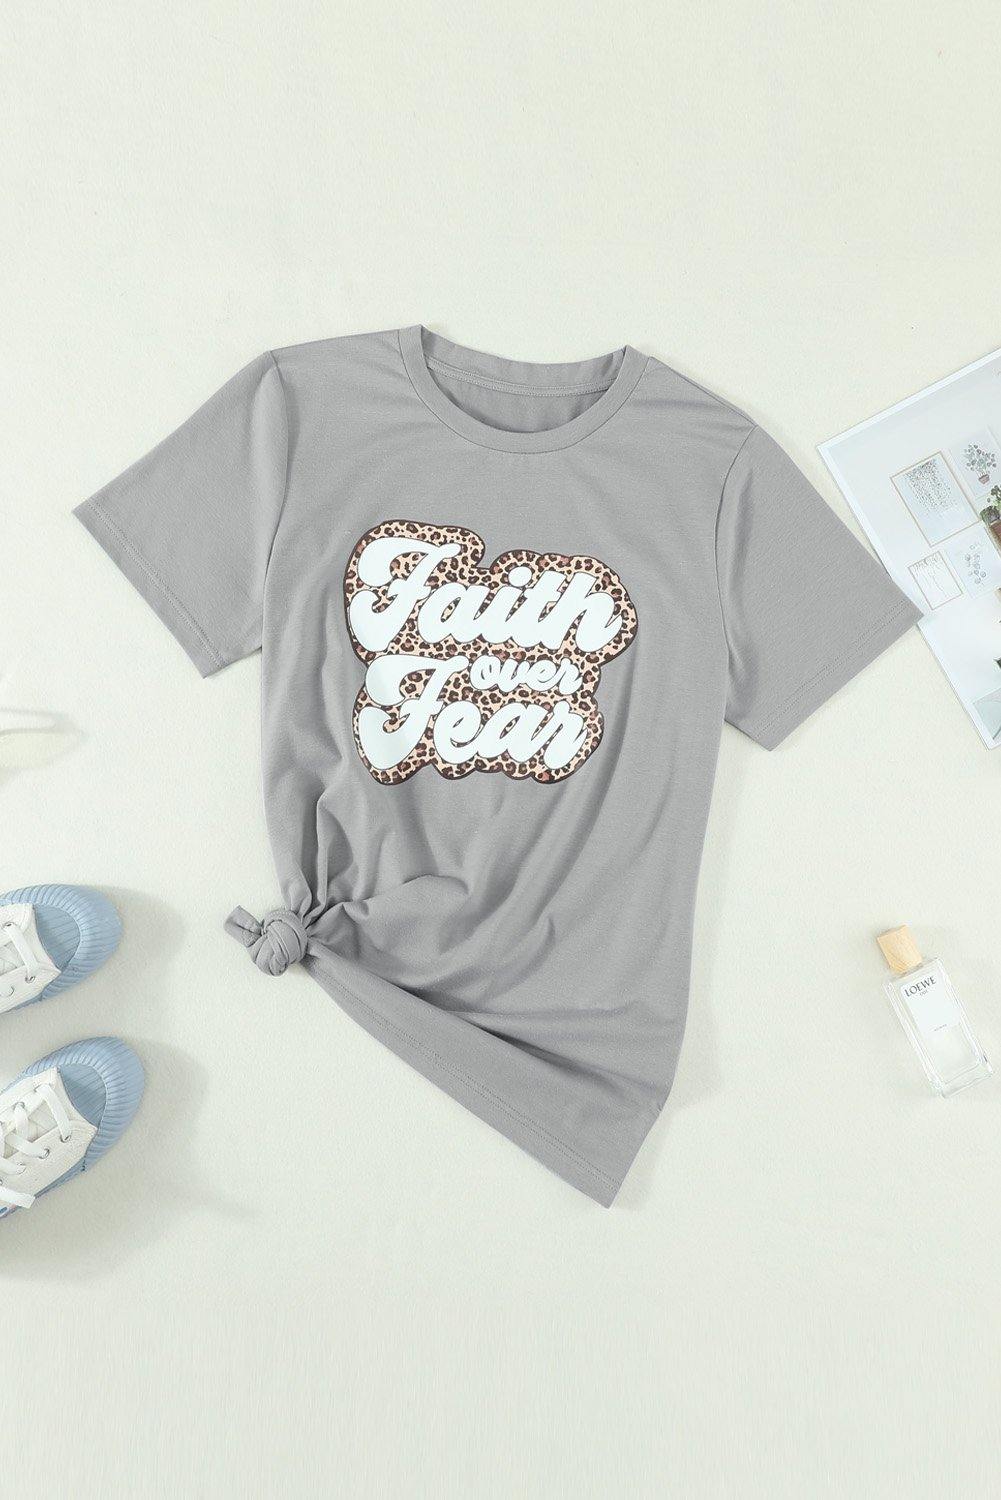 Faith Over Fear Graphic Tee - L & M Kee, LLC